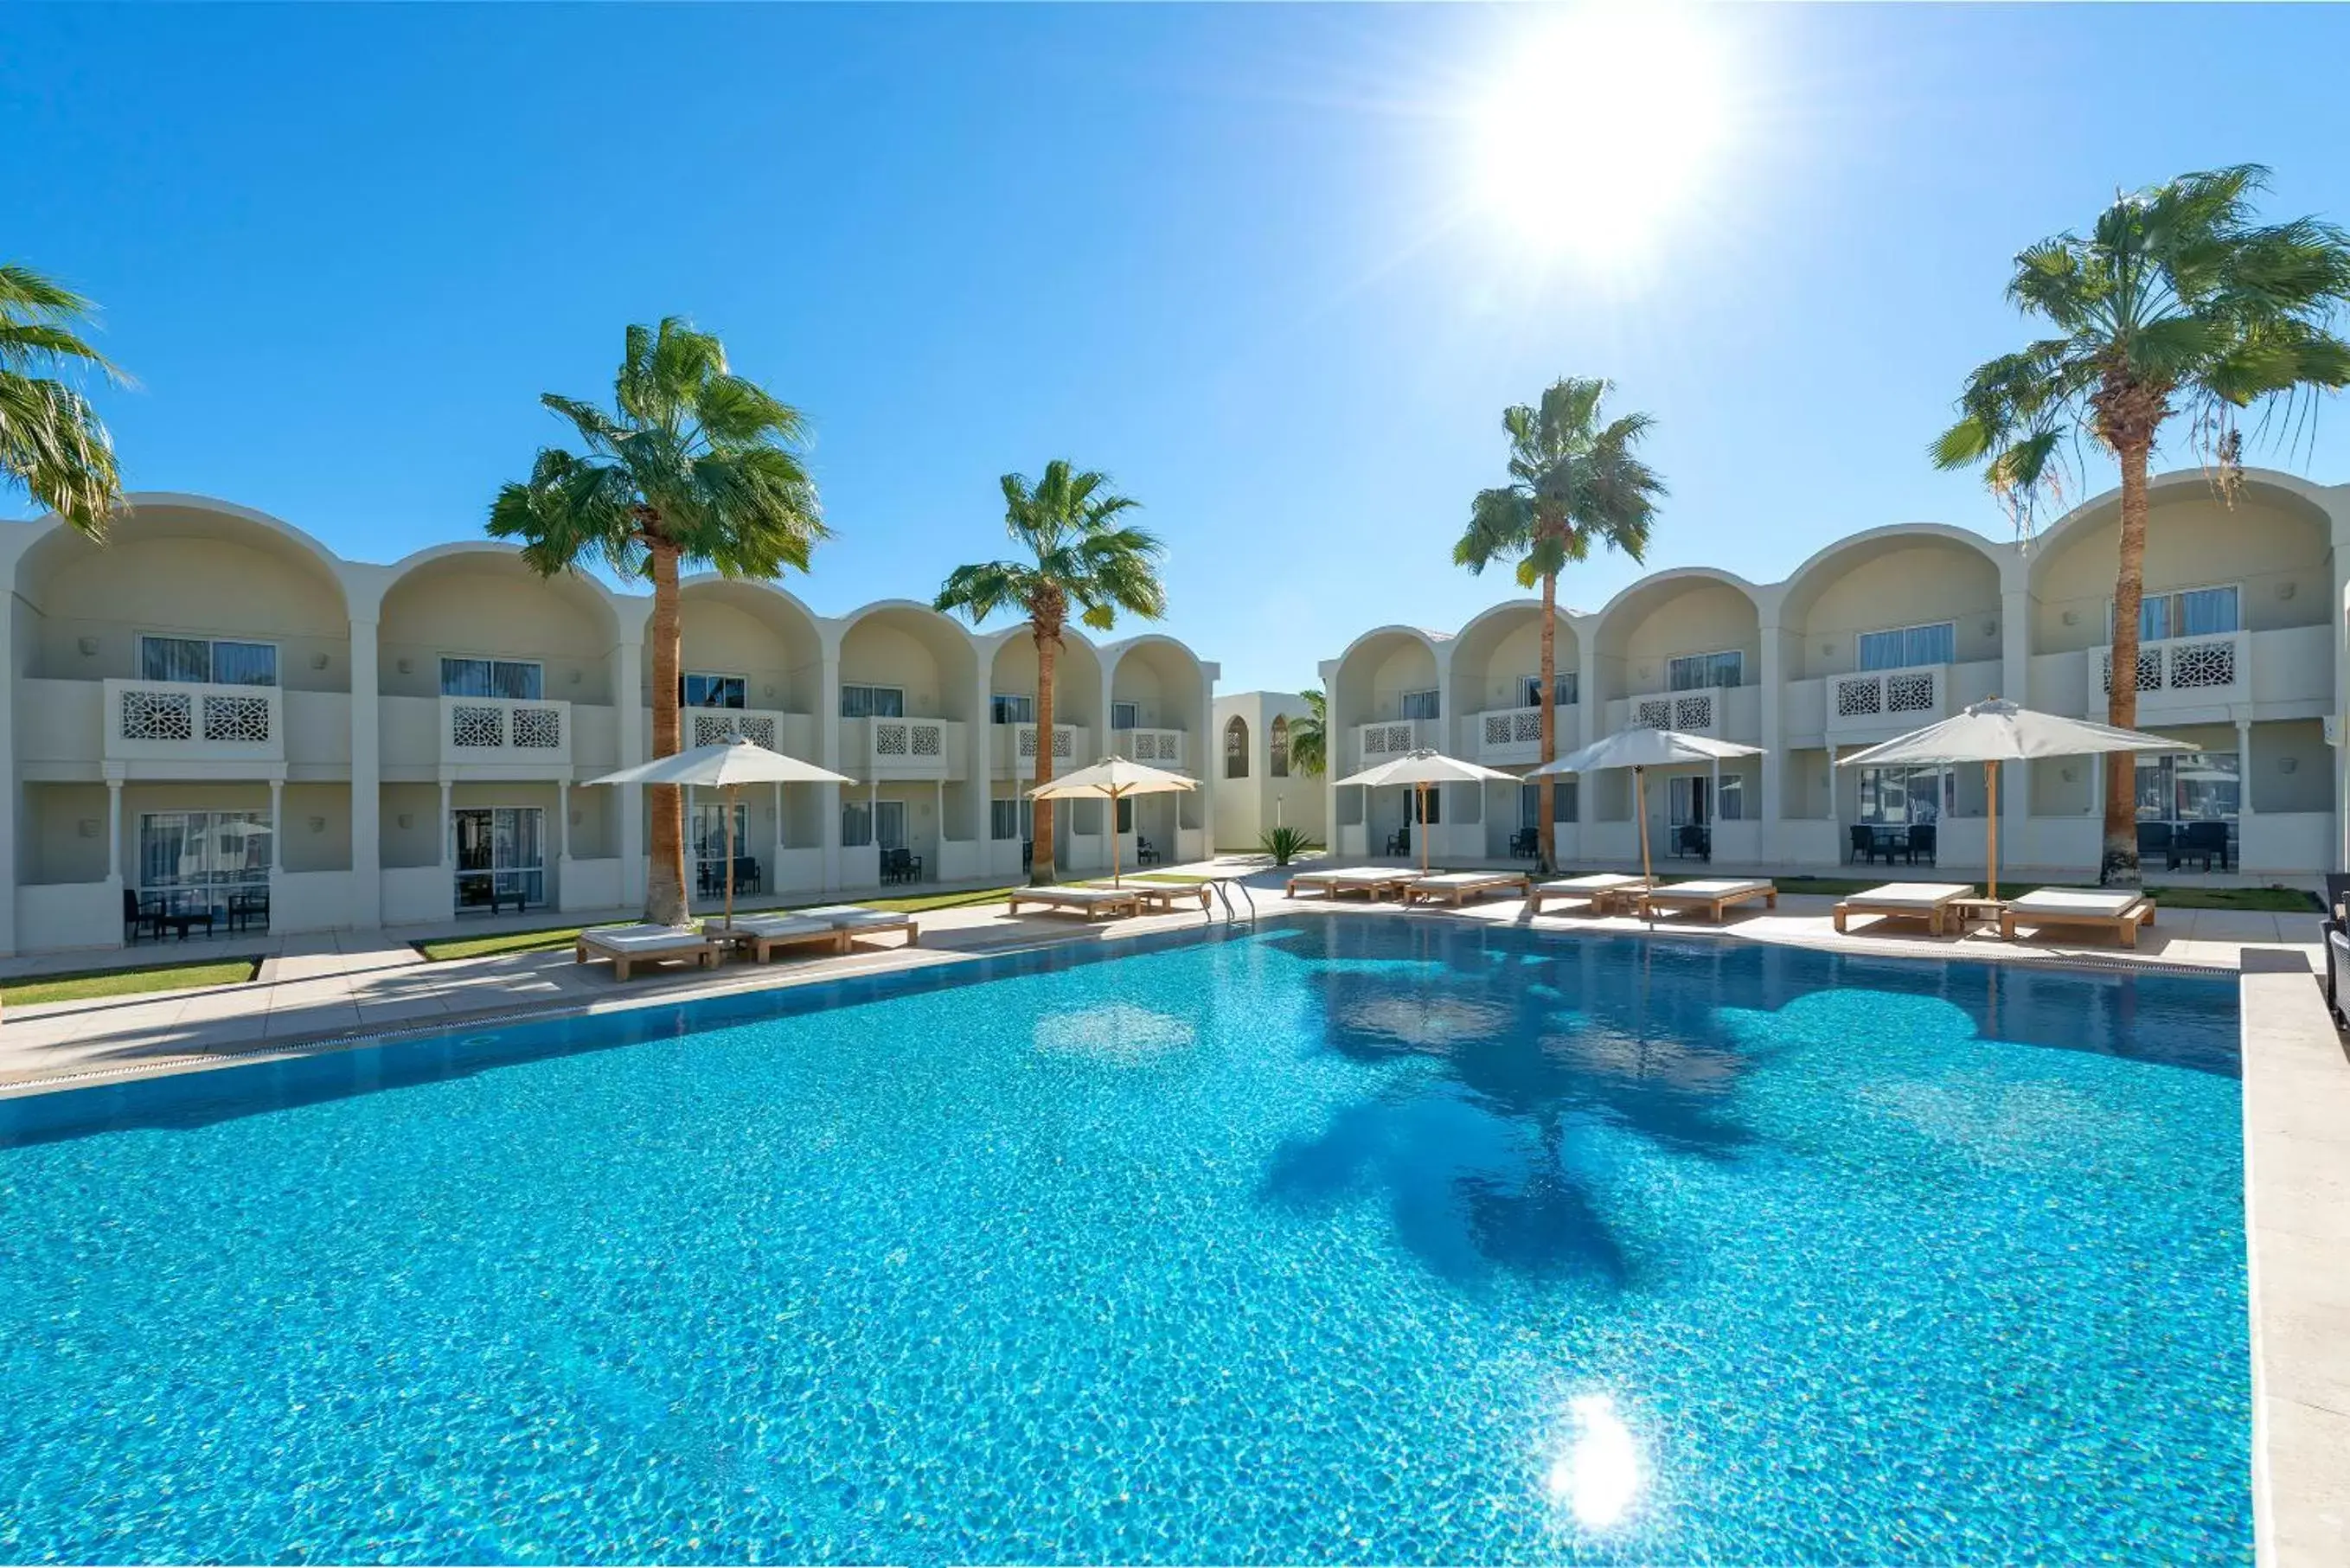 Property building, Swimming Pool in Reef Oasis Beach Aqua Park Resort